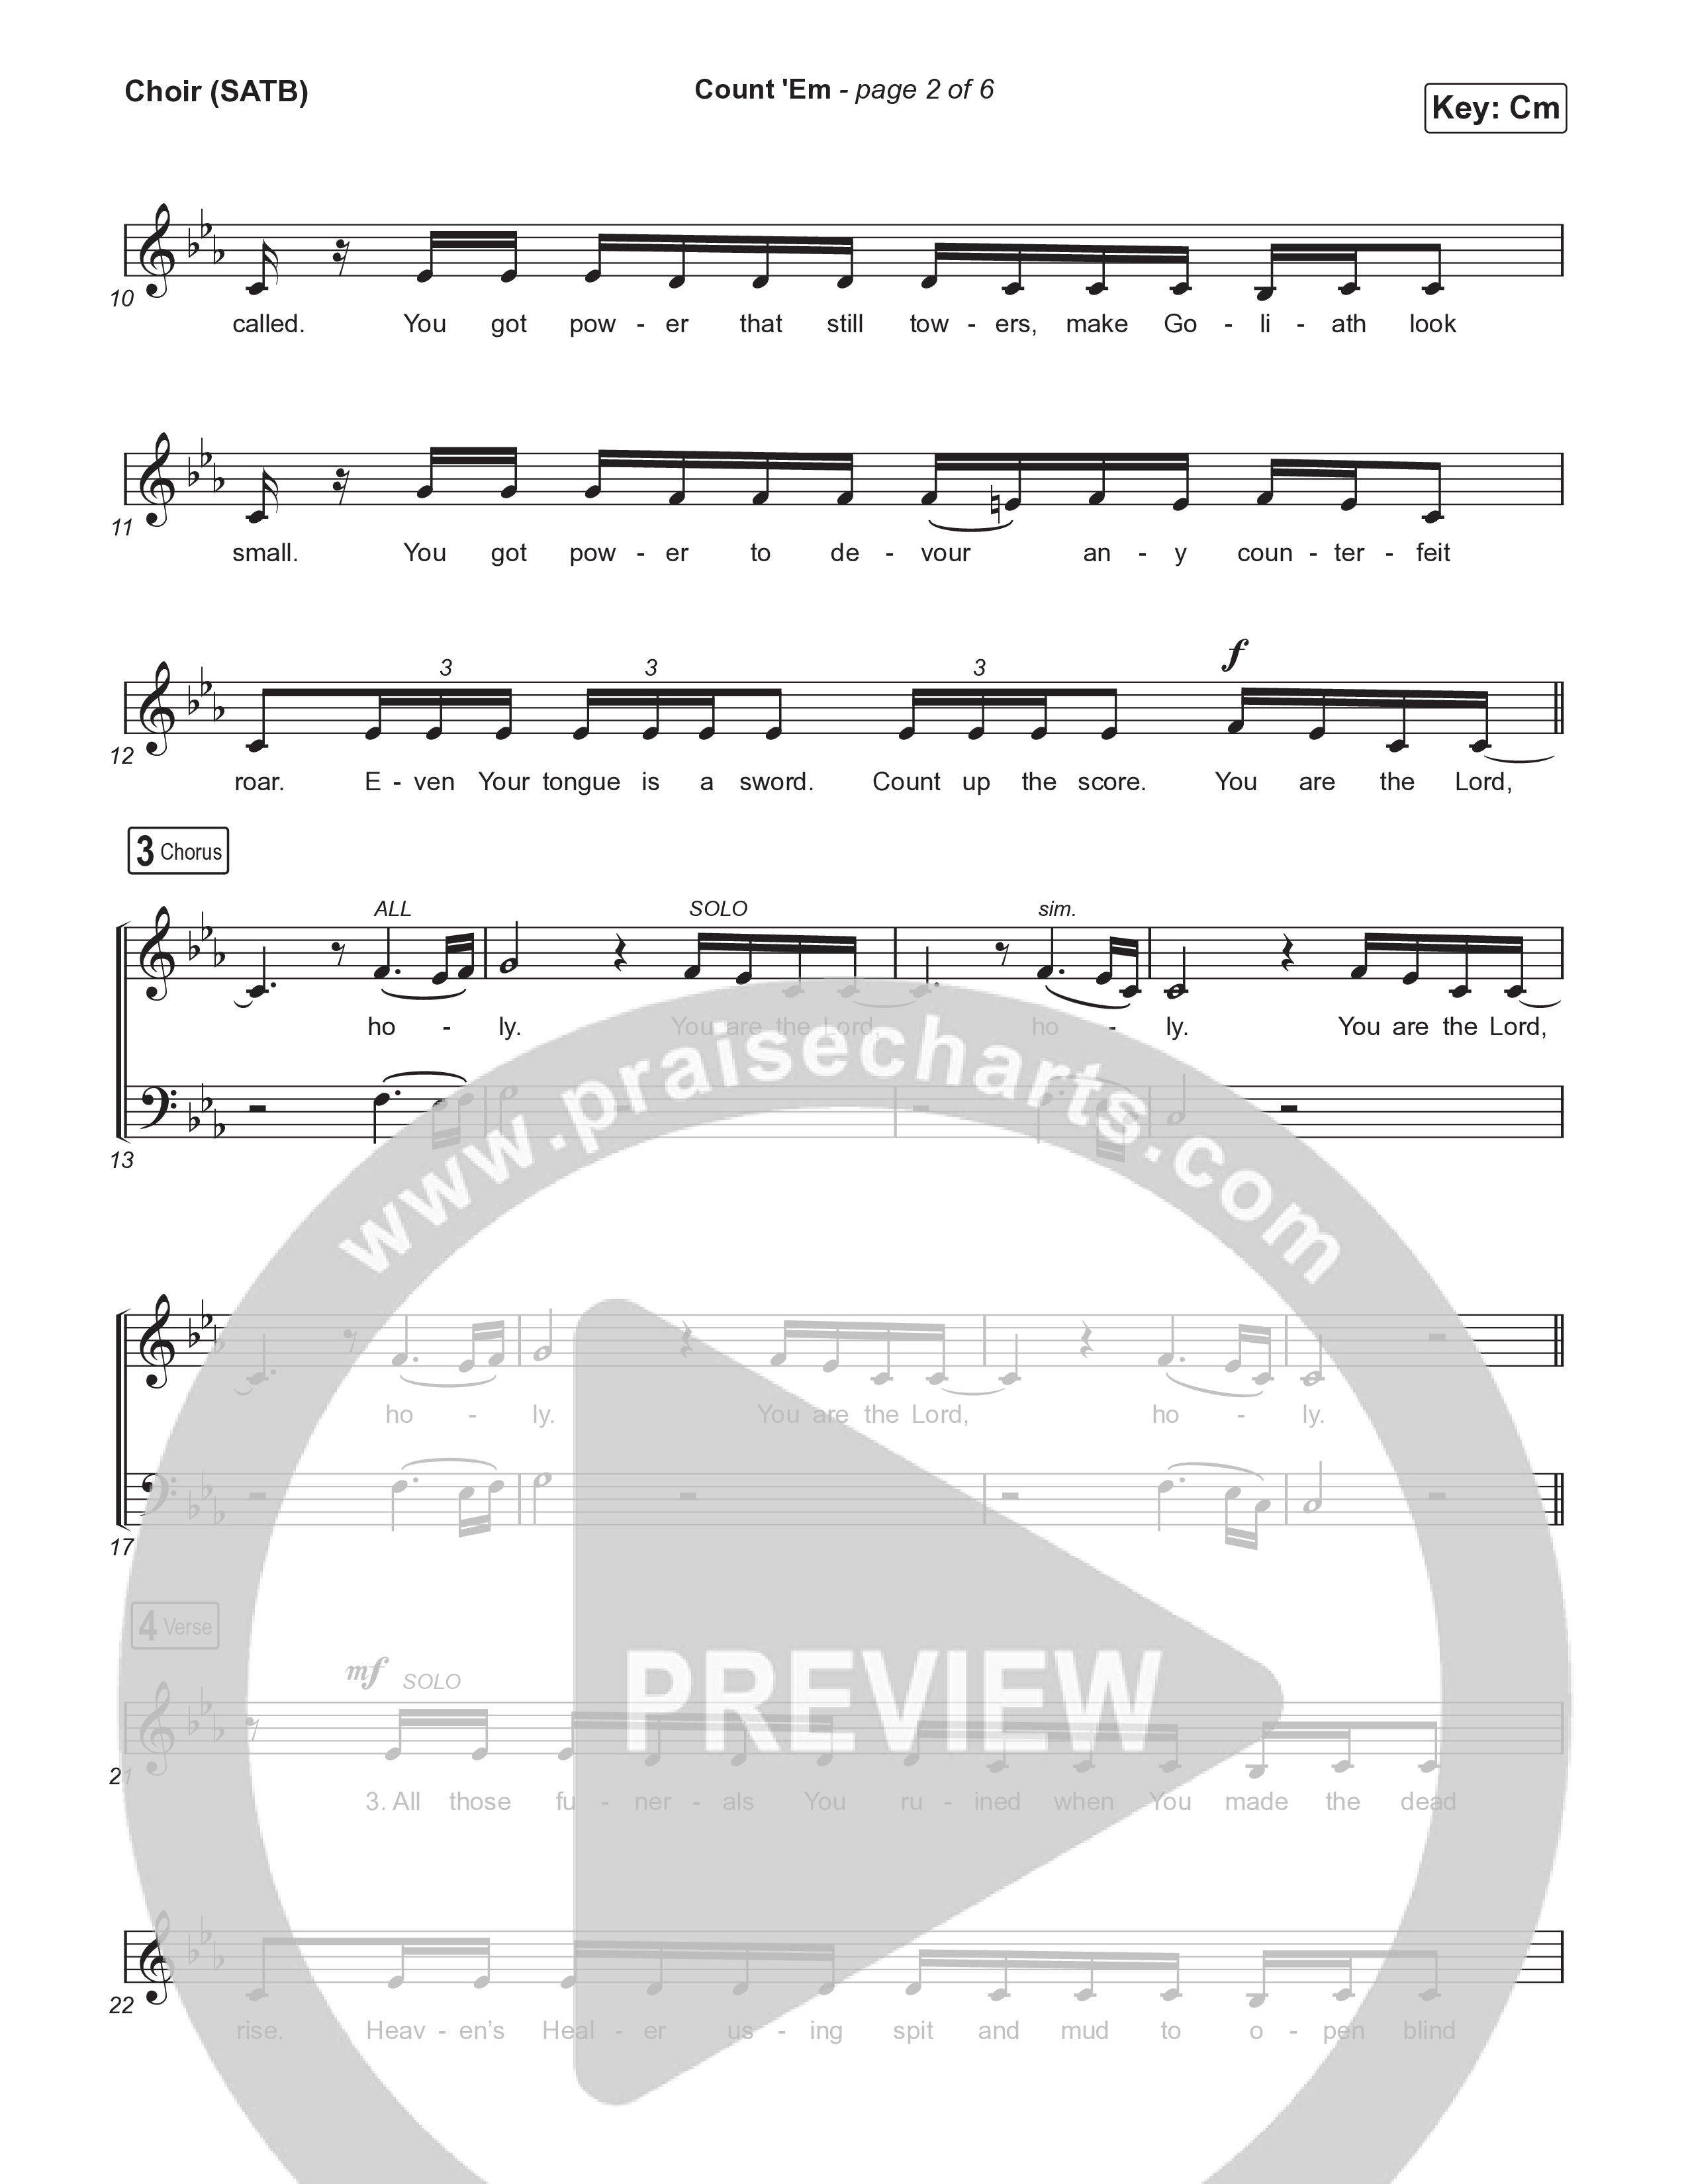 Count 'Em Choir Sheet (SATB) (Brandon Lake)